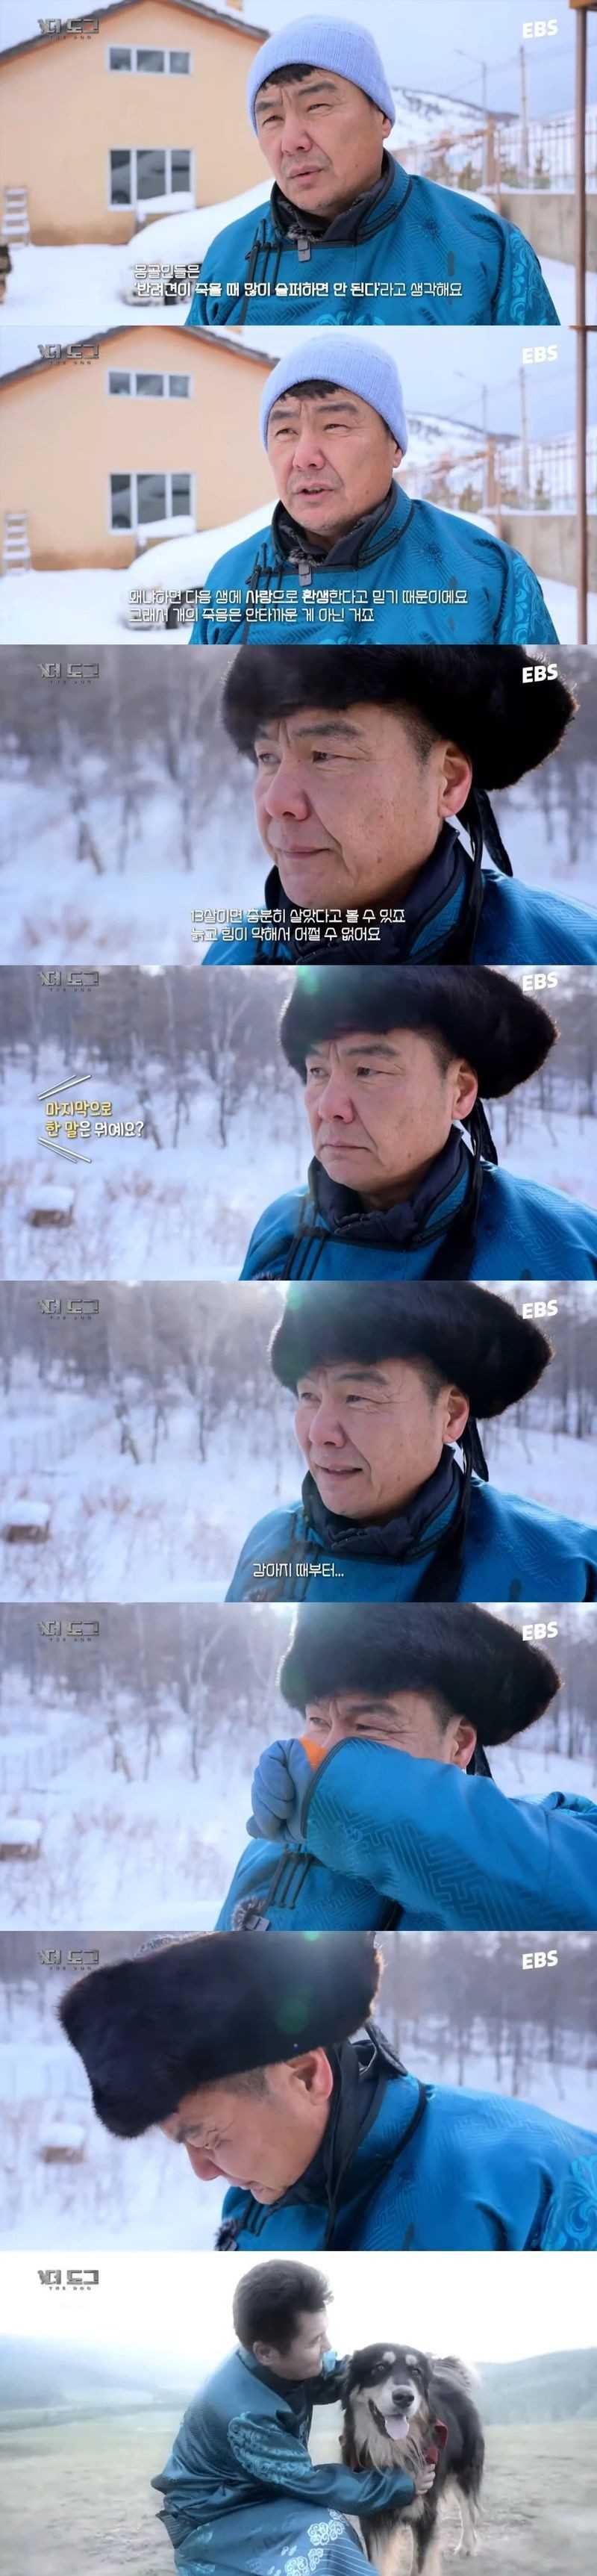 반려견이 죽을때 많이 슬퍼하면 안된다고 생각하는 몽골인들